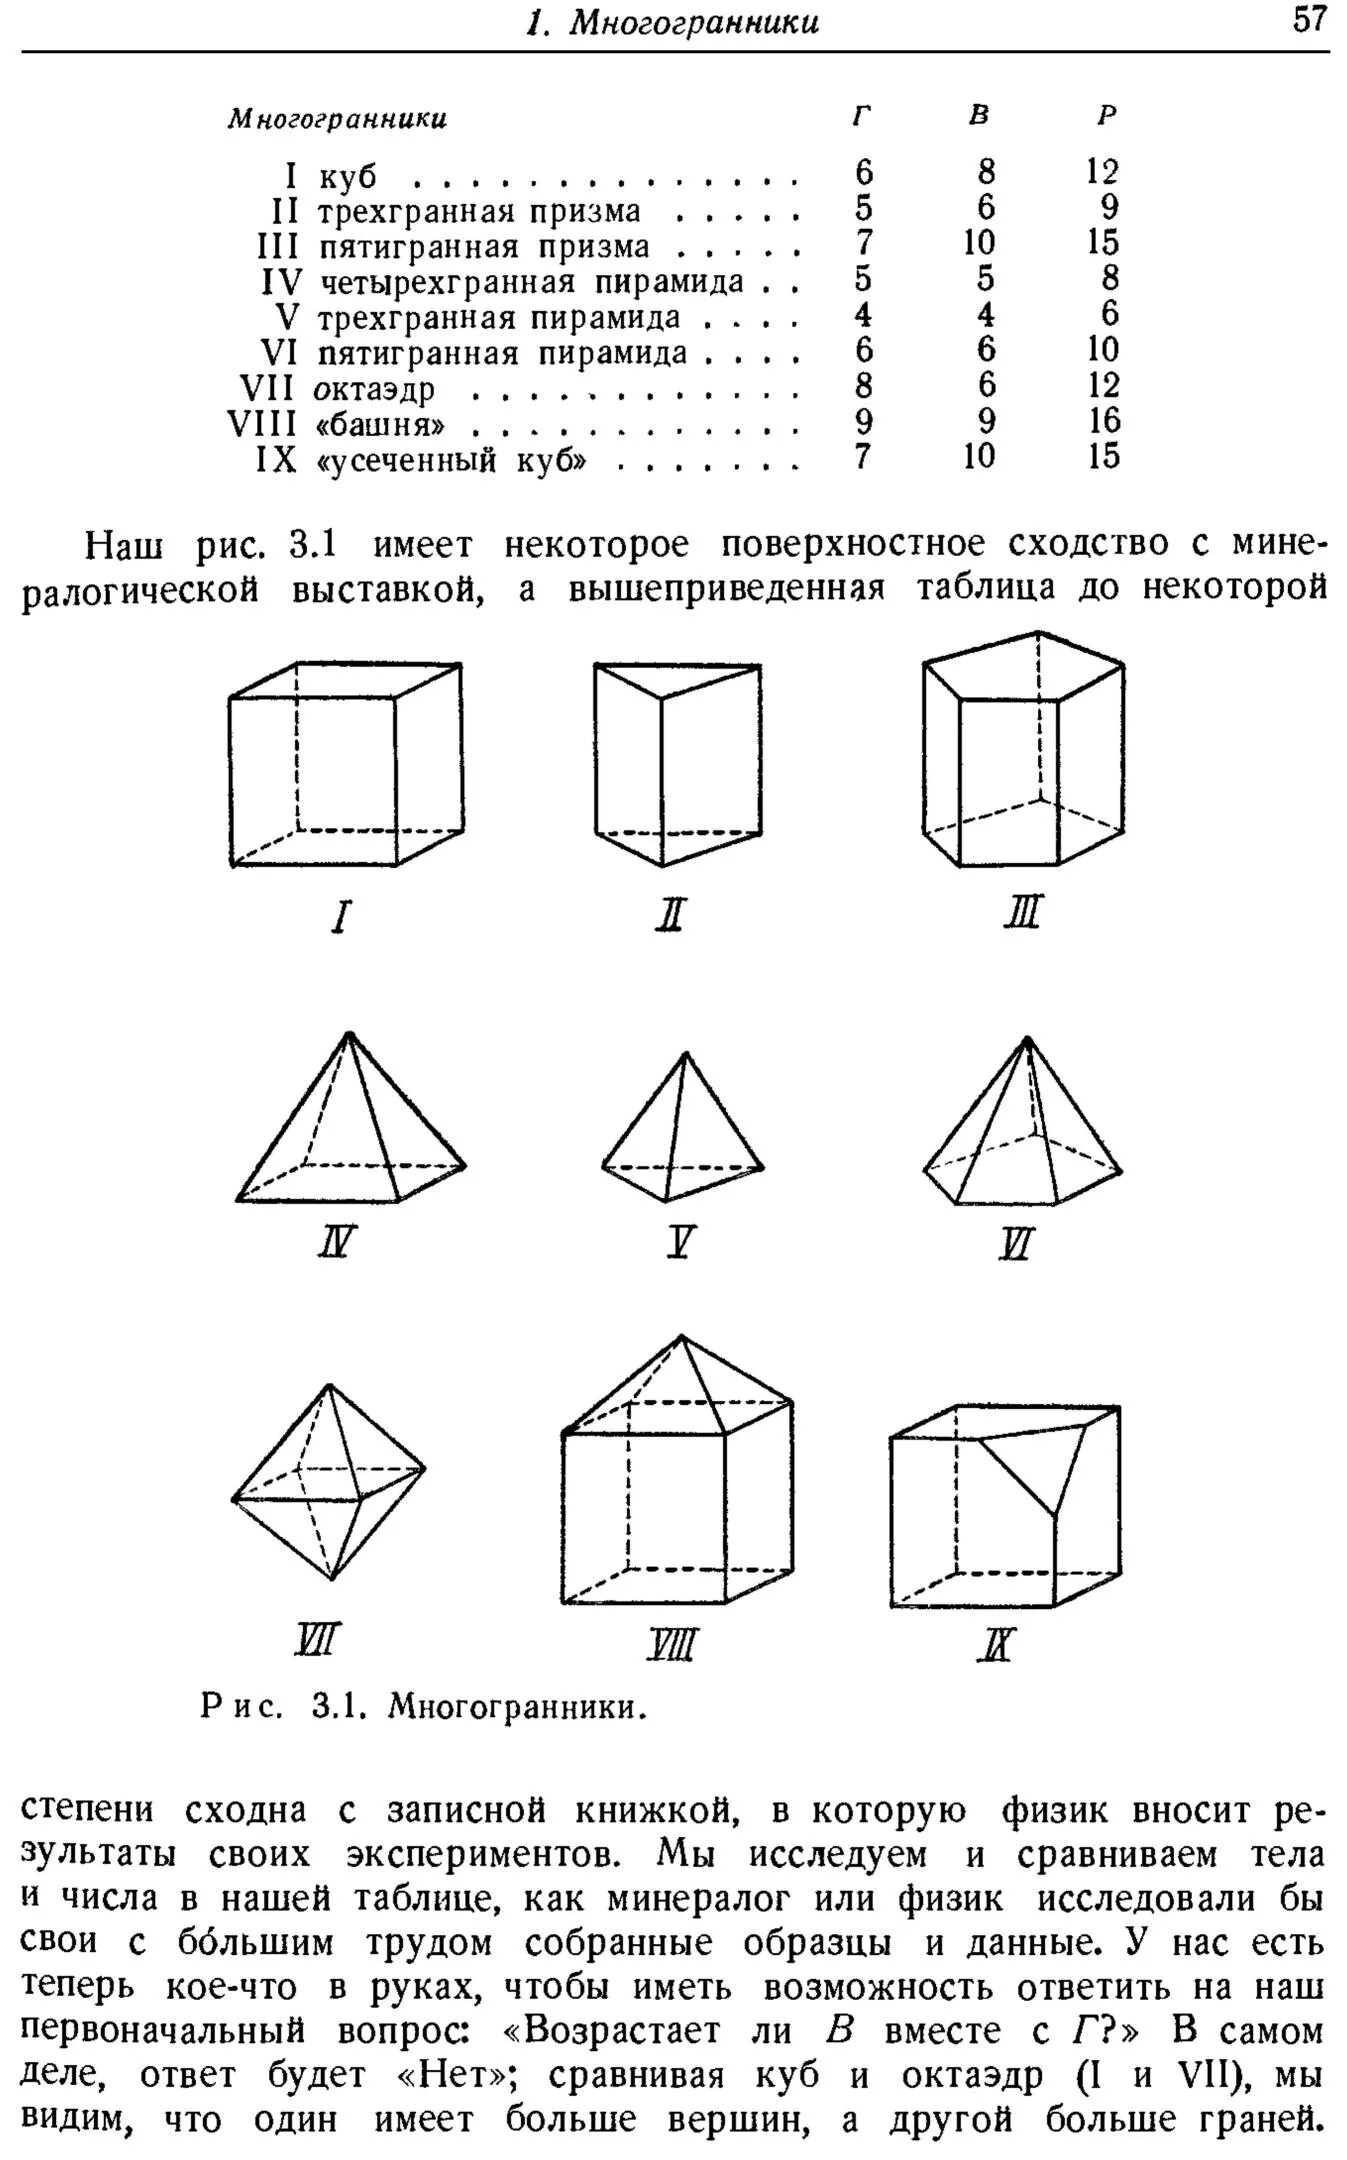 Пирамида и призма 10 класс самостоятельная. Тест 4 многогранники Призма 10 класс ответы. Зачет по геометрии 10 класс Призма и пирамида. Тест 4 многогранники Призма 10 класс ответы вариант 1. Тест 4 многогранники Призма.